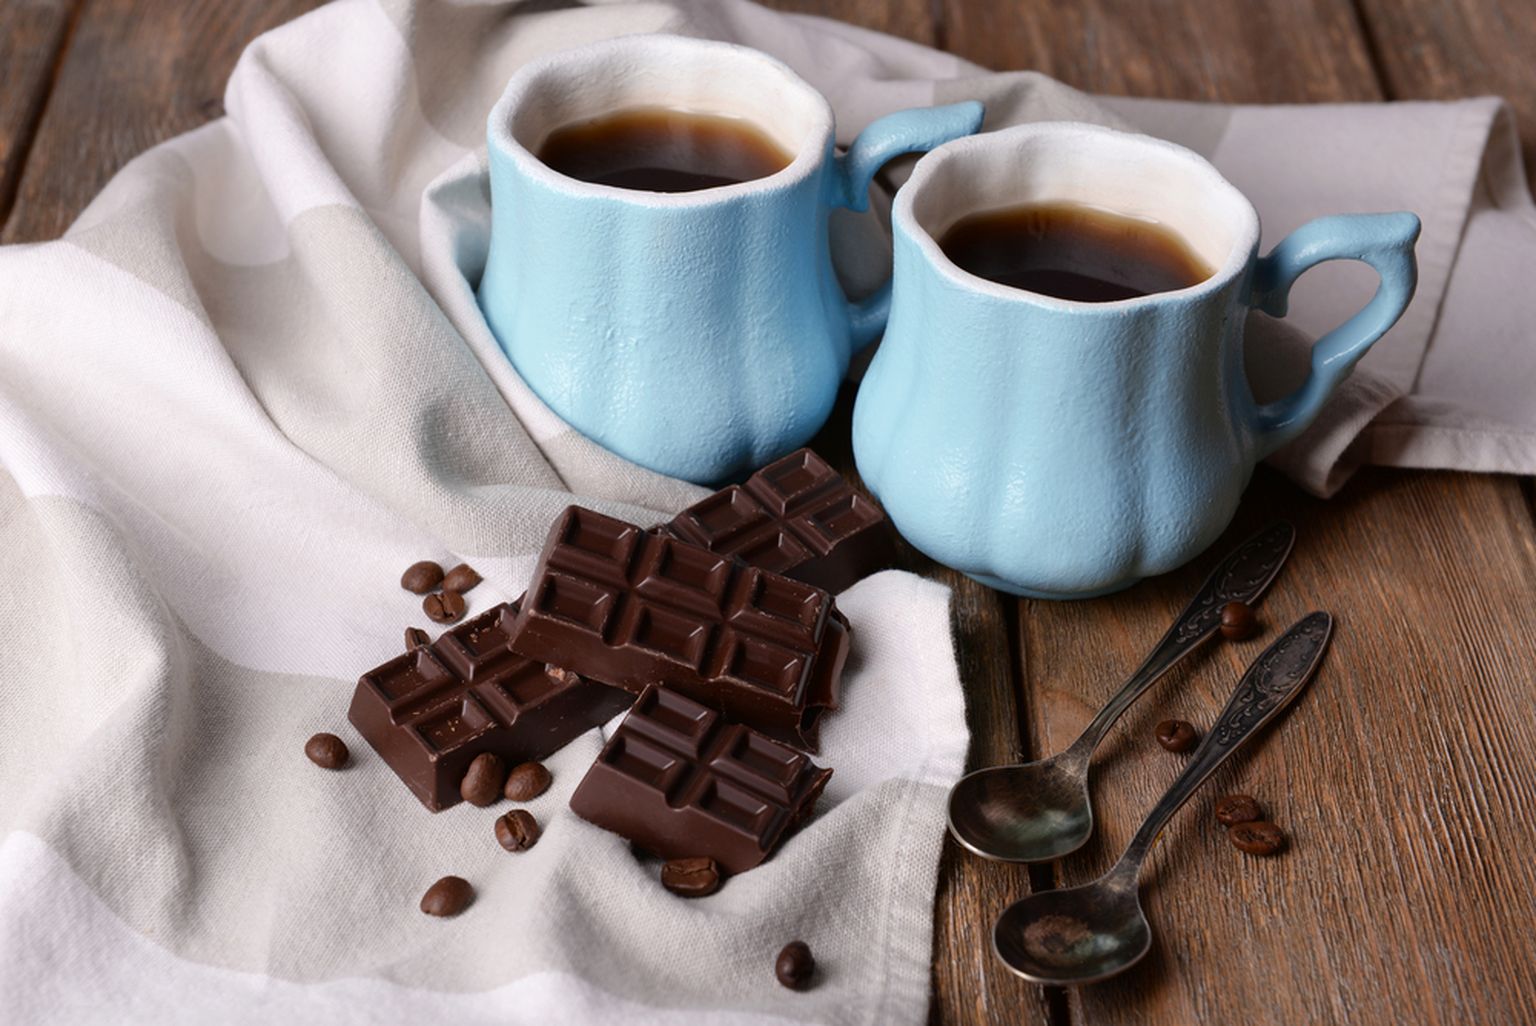 Kohvi kõrvale joomine muudab šokolaadi veelgi magusamaks!